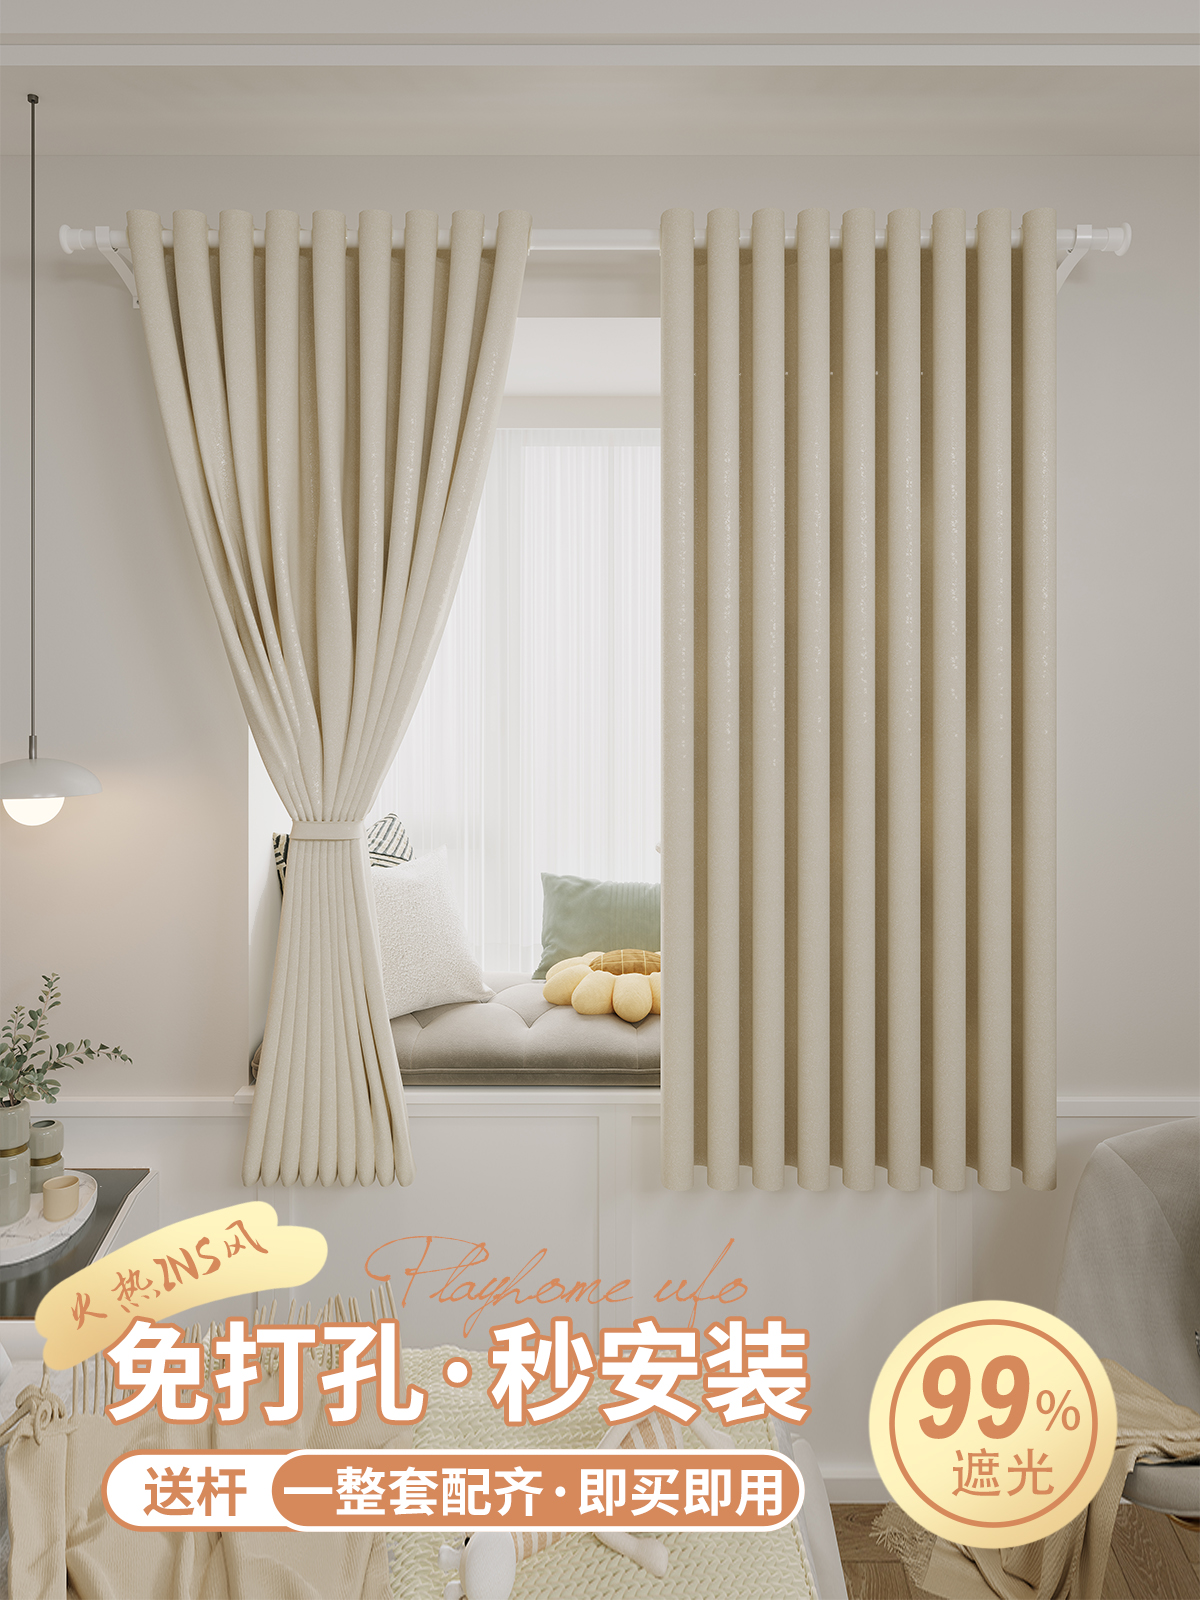 簡約現代風格全遮光窗簾輕鬆打造舒適臥室空間 (5.5折)